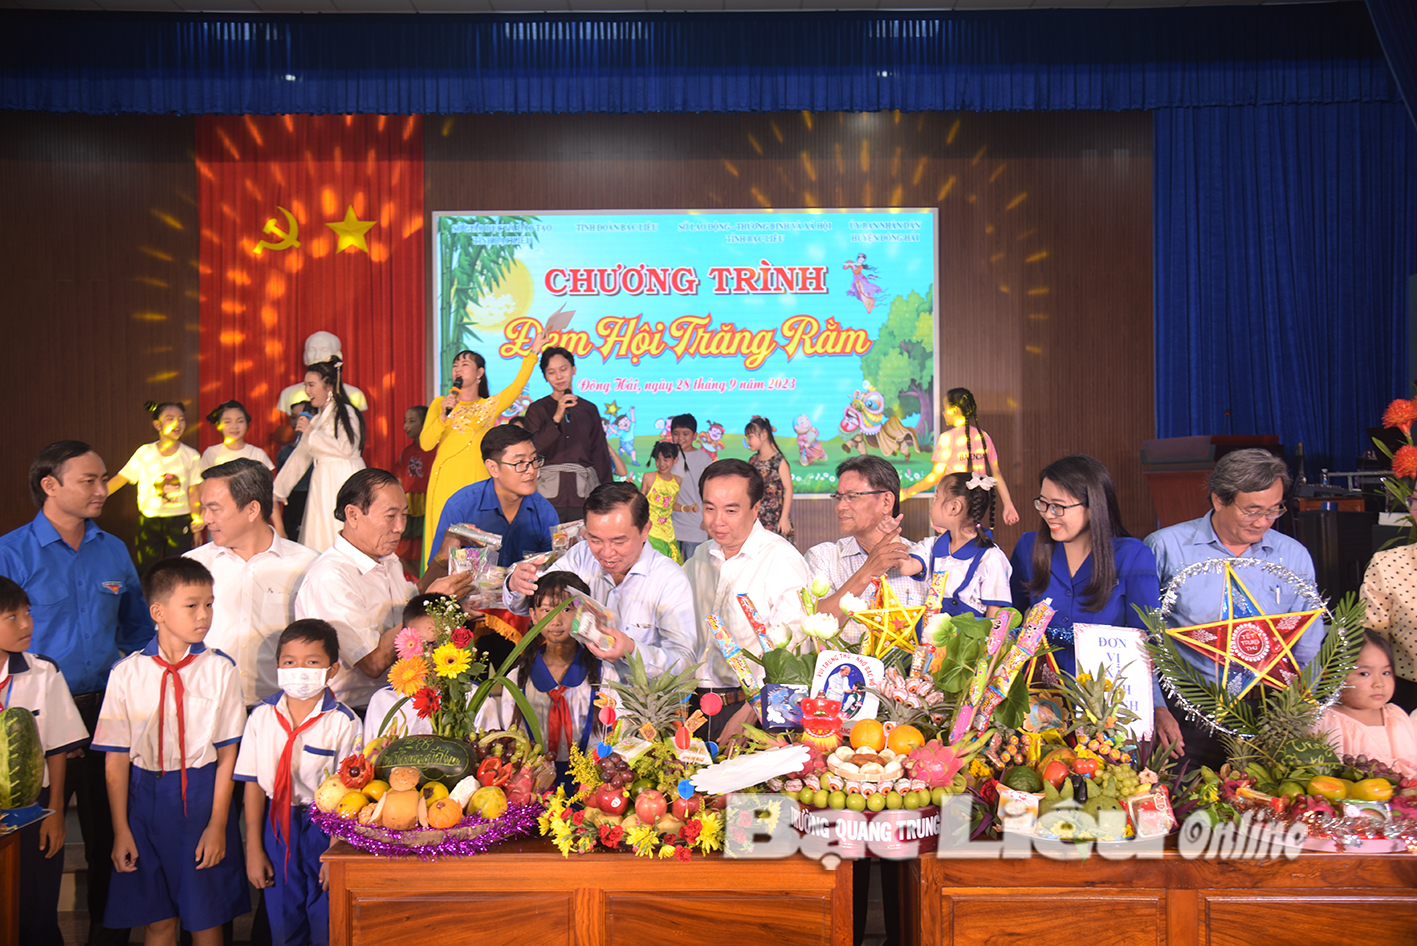 Hơn 300 trẻ em tham dự chương trình “Đêm hội trăng Rằm” tại huyện Đông Hải